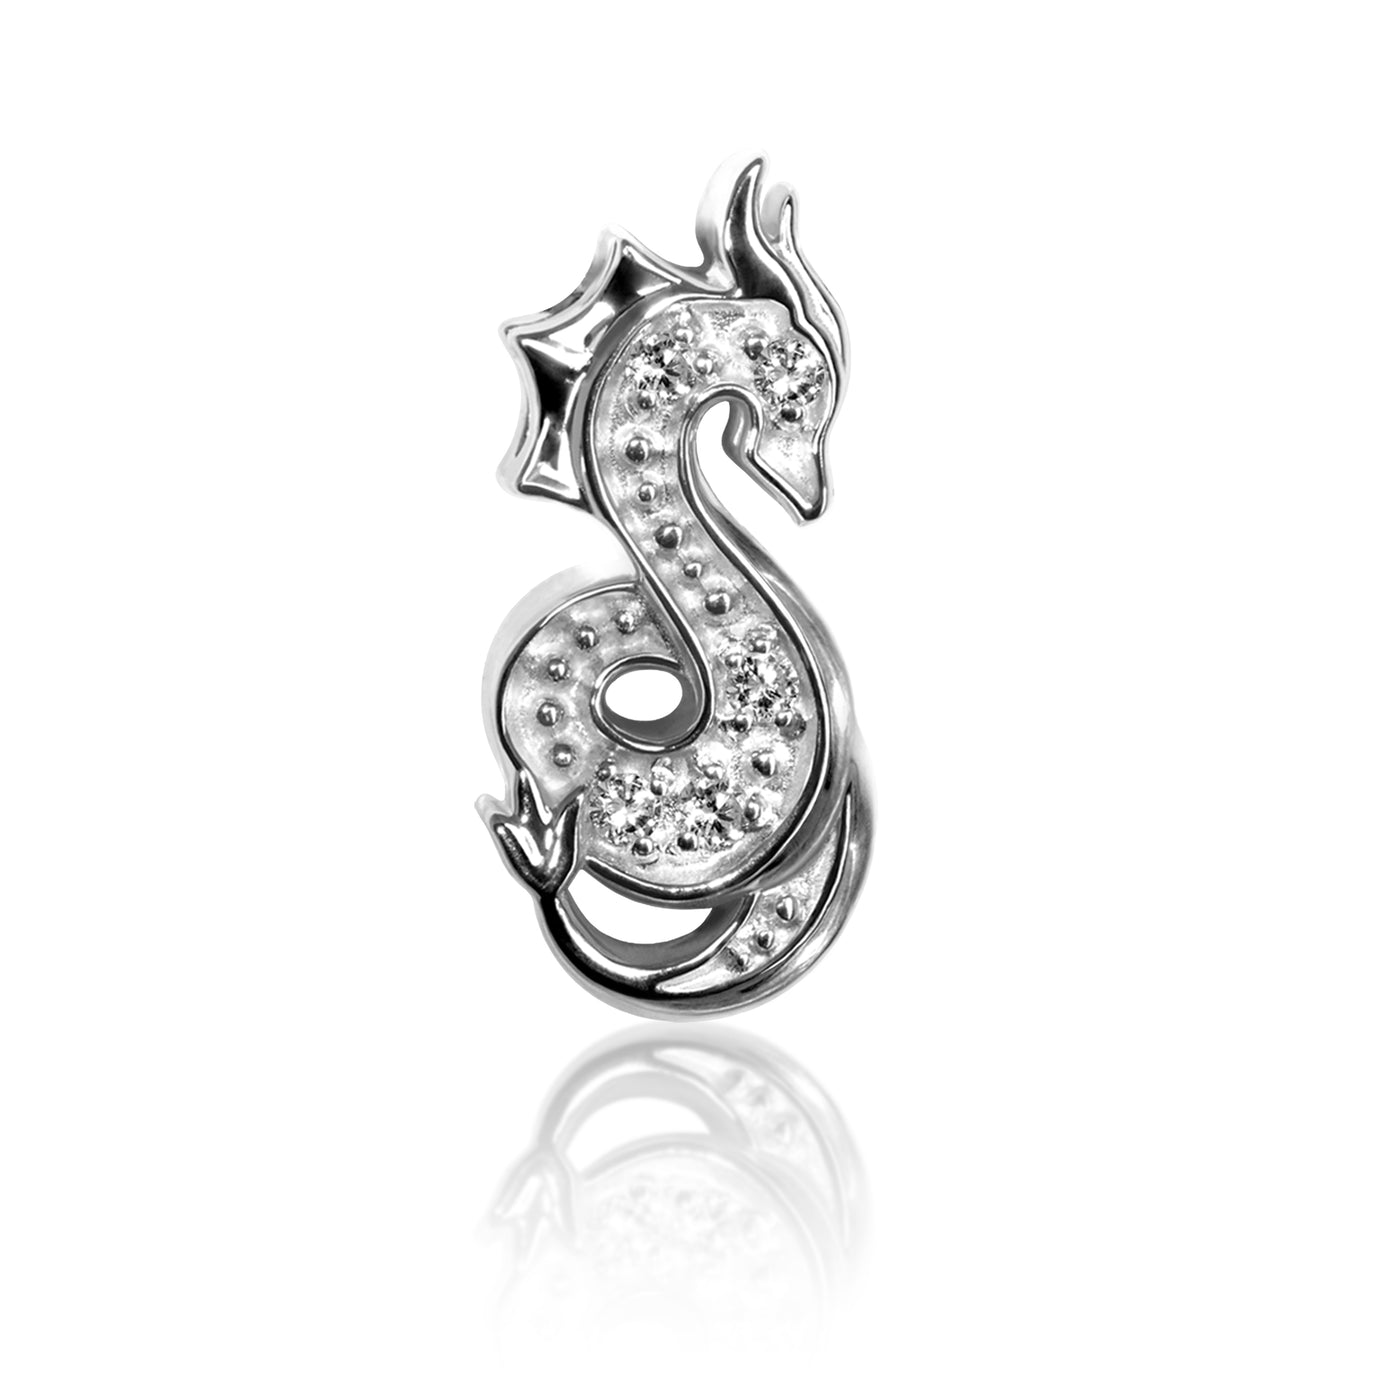 Alex Woo Zodiac Dragon Charm Necklace 14kt White Gold with Diamonds / 16 inch (Standard)